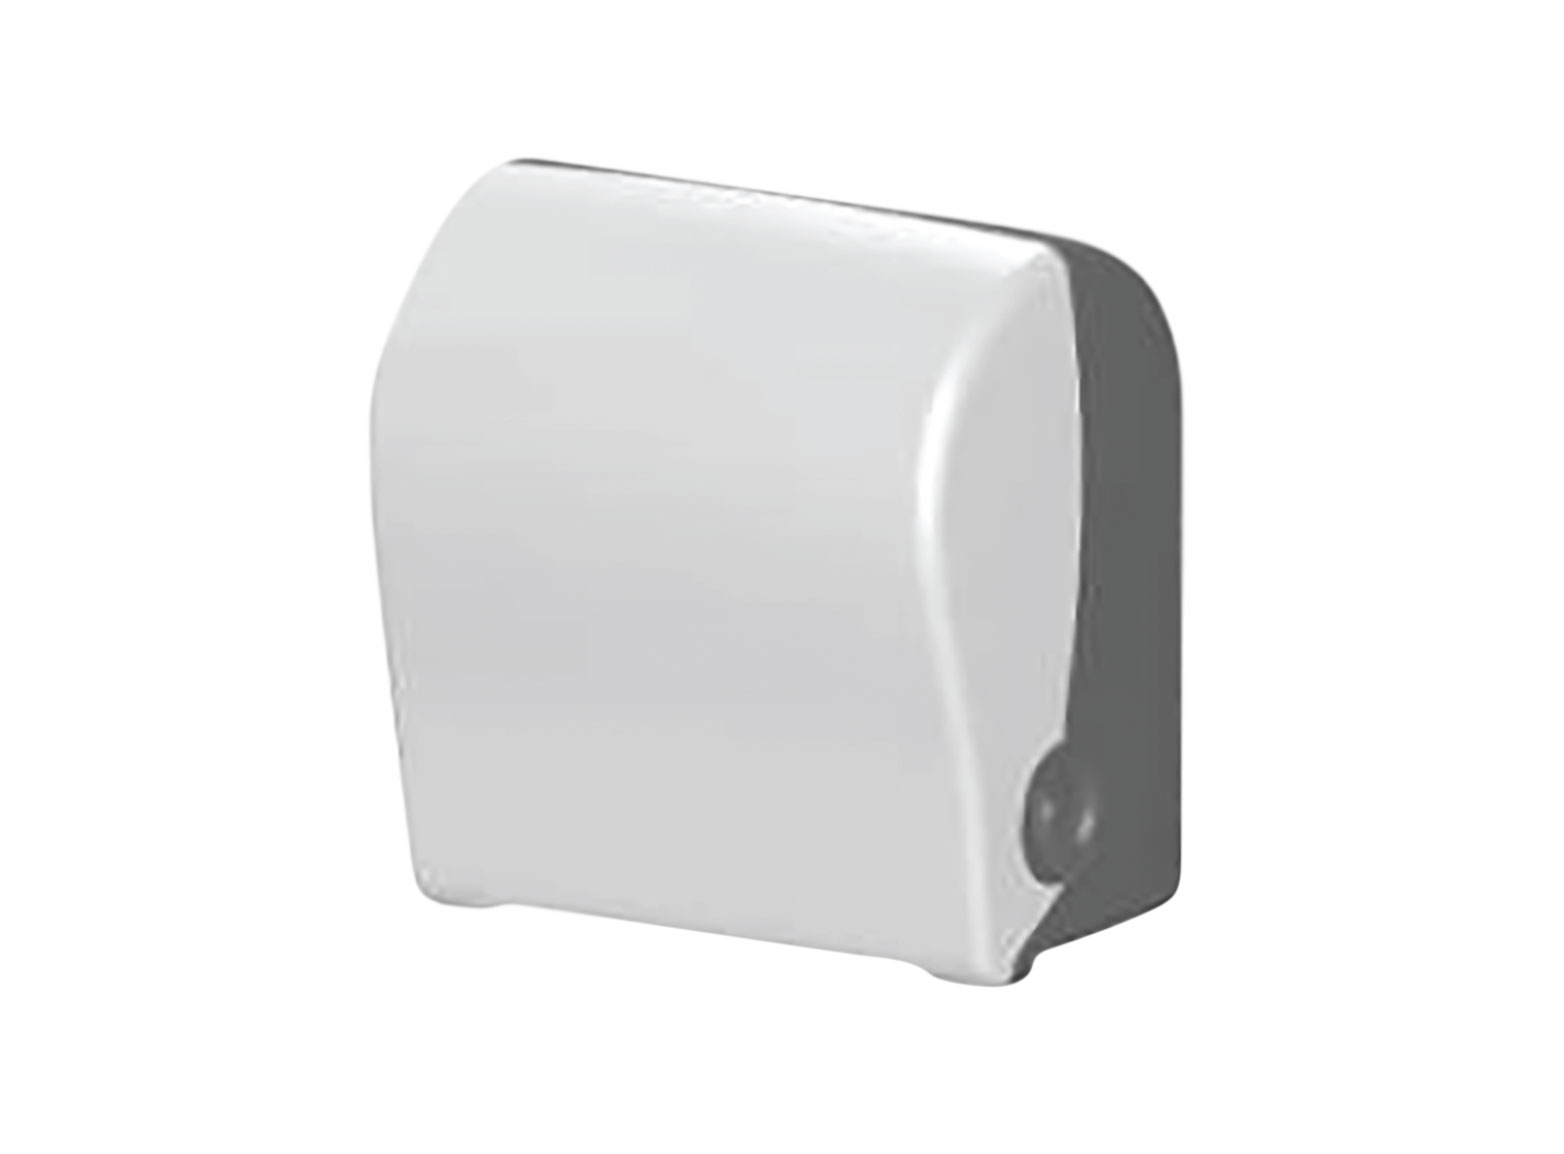 Auto cut paper towel dispenser